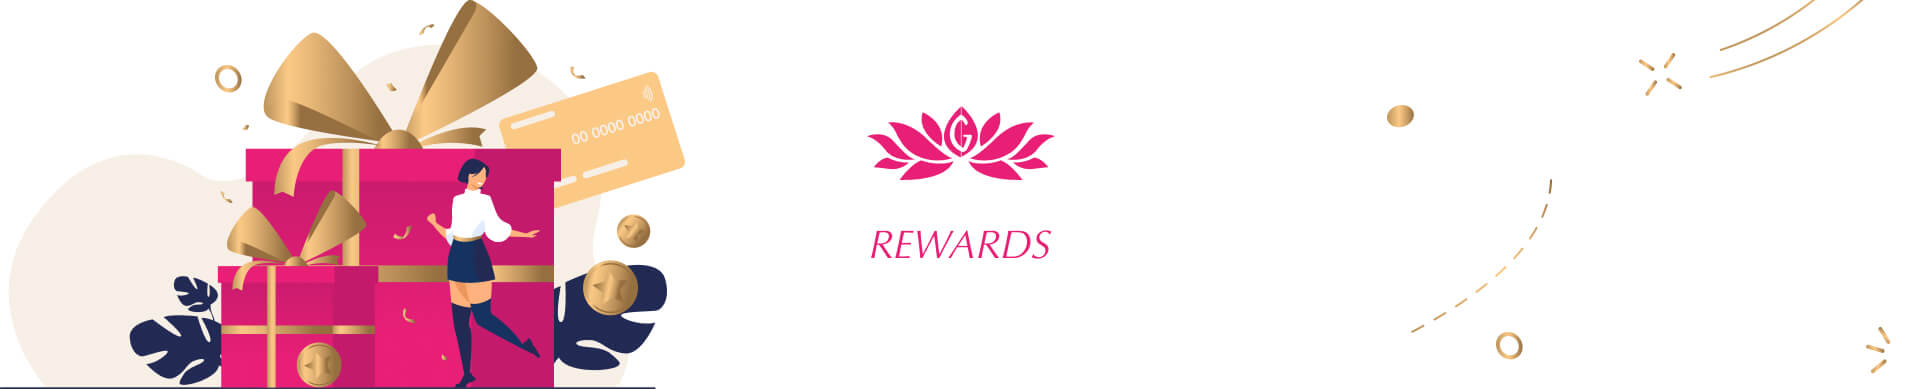 Rewards banner